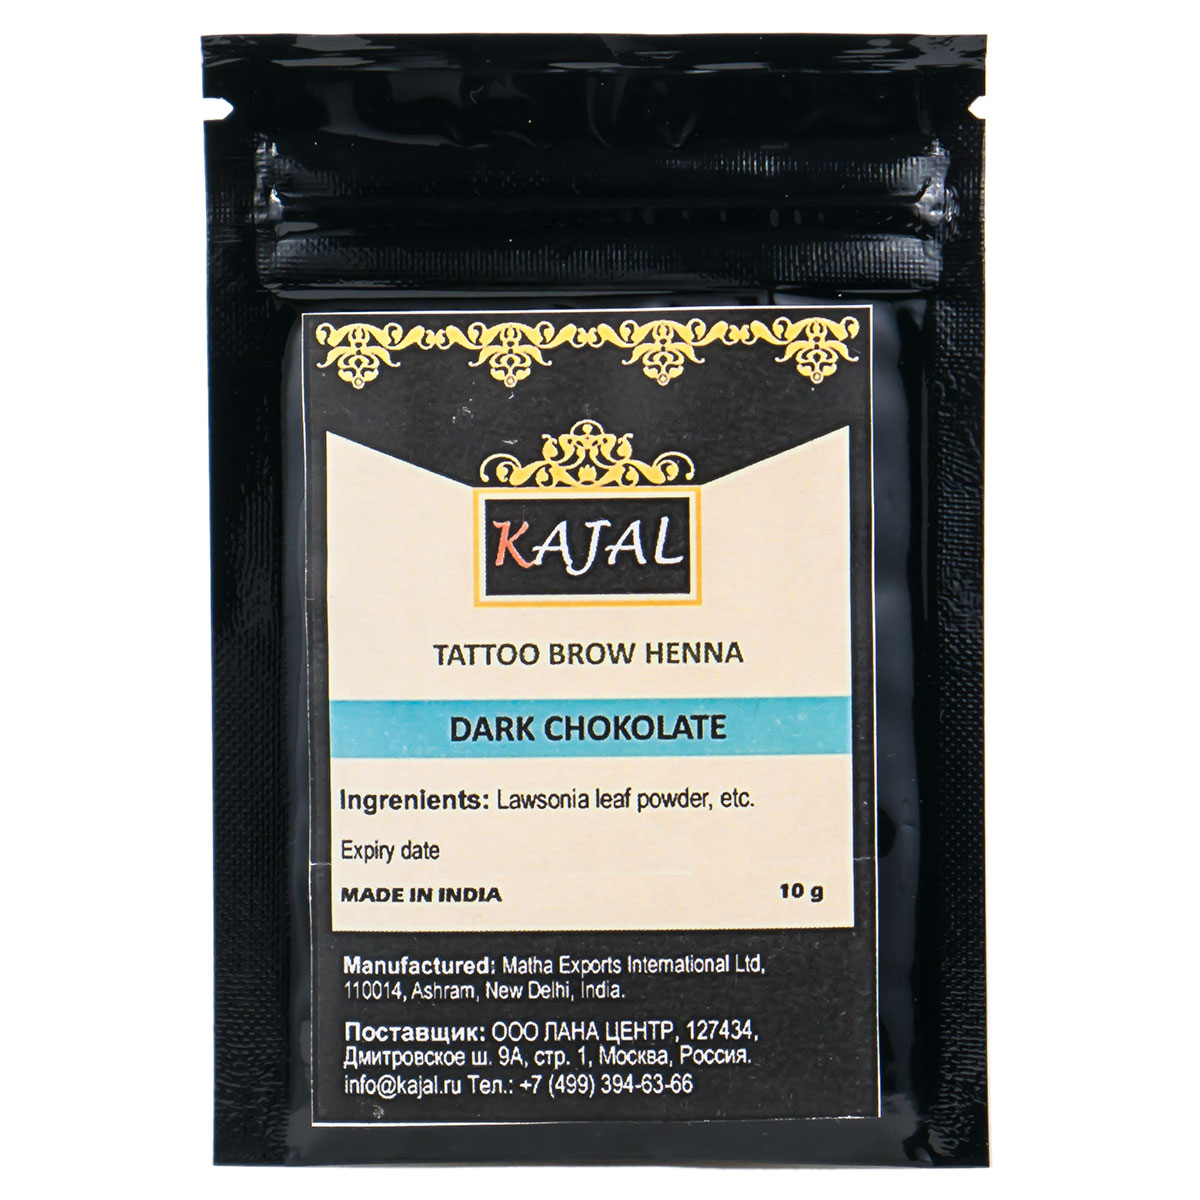 Хна Kajal для окрашивания бровей KAJAL TATTOO BROW HENNA (горький шоколад) 10 гр. хна для окрашивания ресниц и бровей cc brow 00104 в саше черная 10 гр